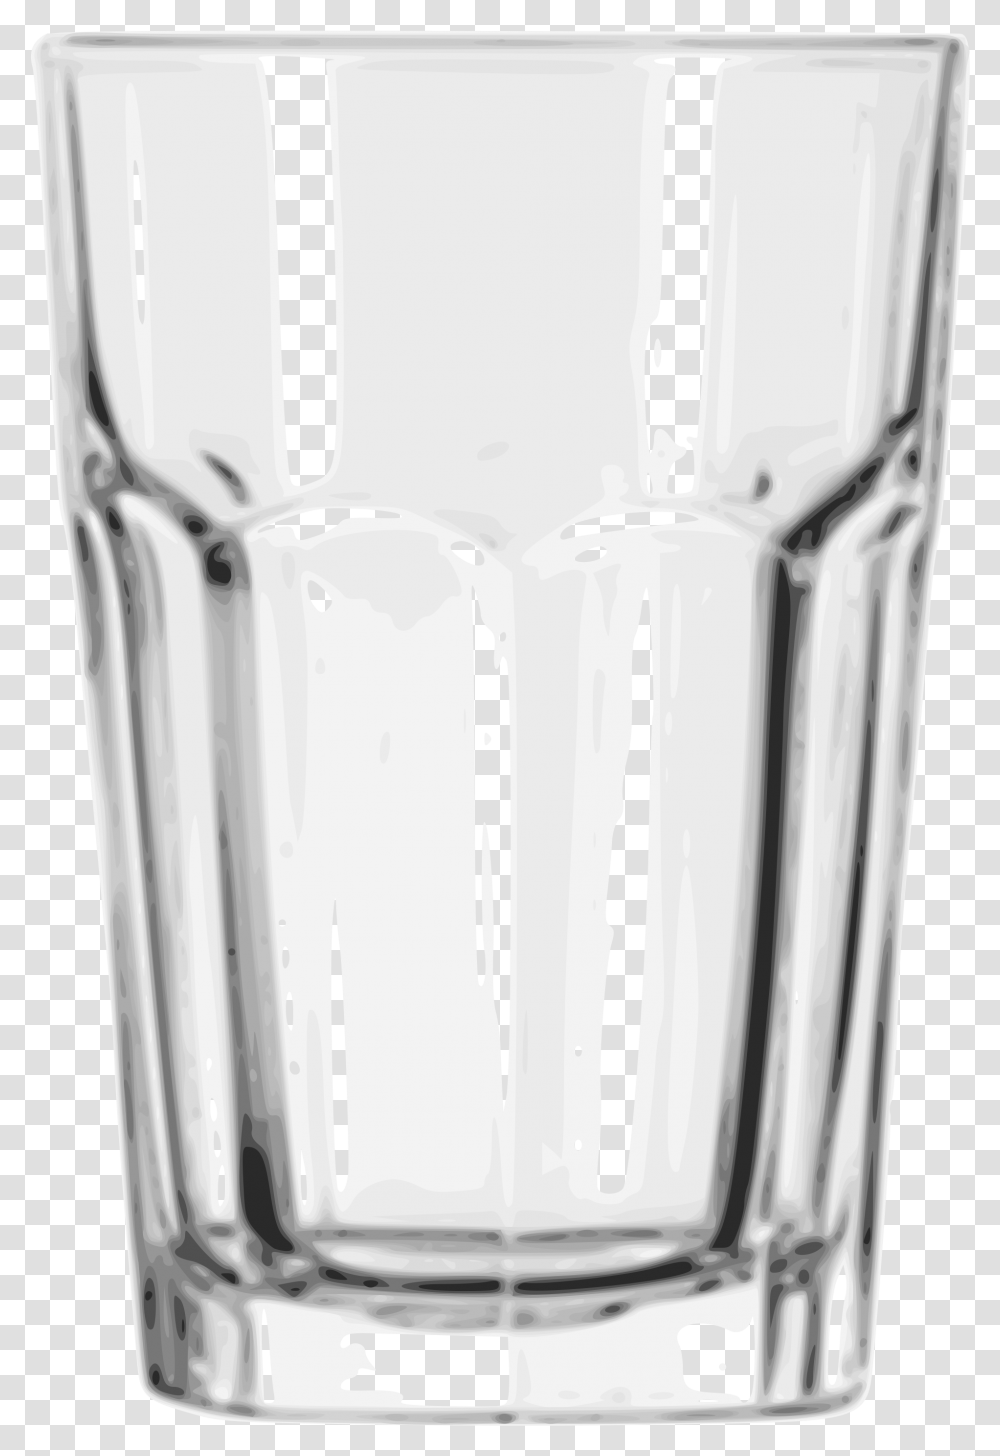 Beverage Glass Tumbler, Shaker, Bottle, Beer Glass, Alcohol Transparent Png